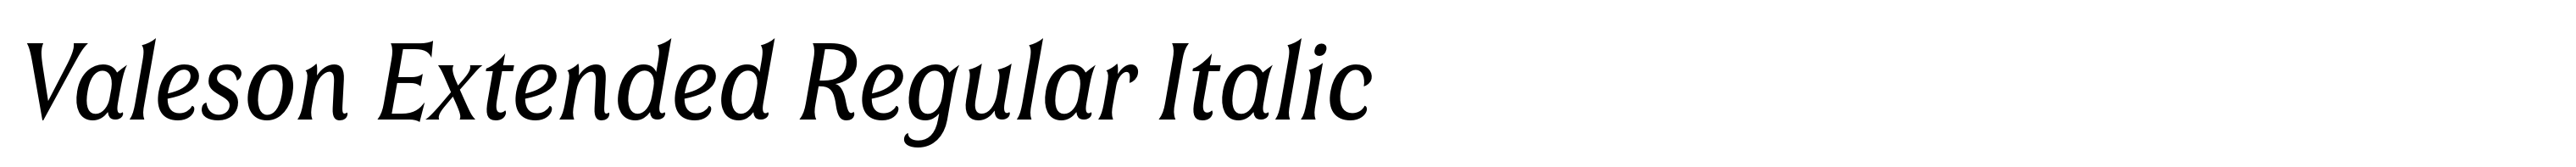 Valeson Extended Regular Italic